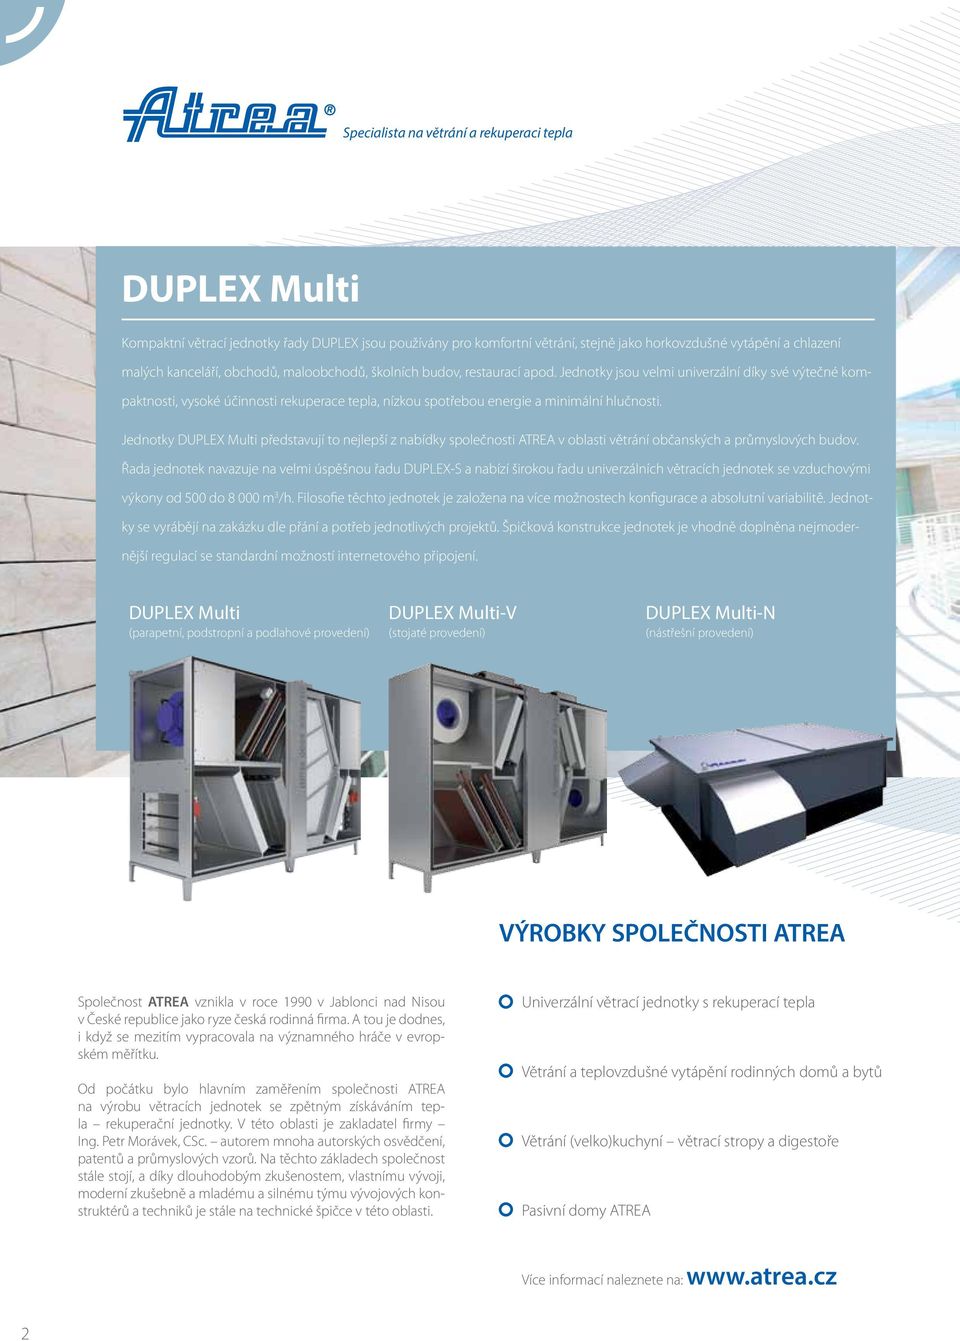 Jednotky DUPLEX Multi představují to nejlepší z nabídky společnosti ATREA v oblasti větrání občanských a průmyslových budov.